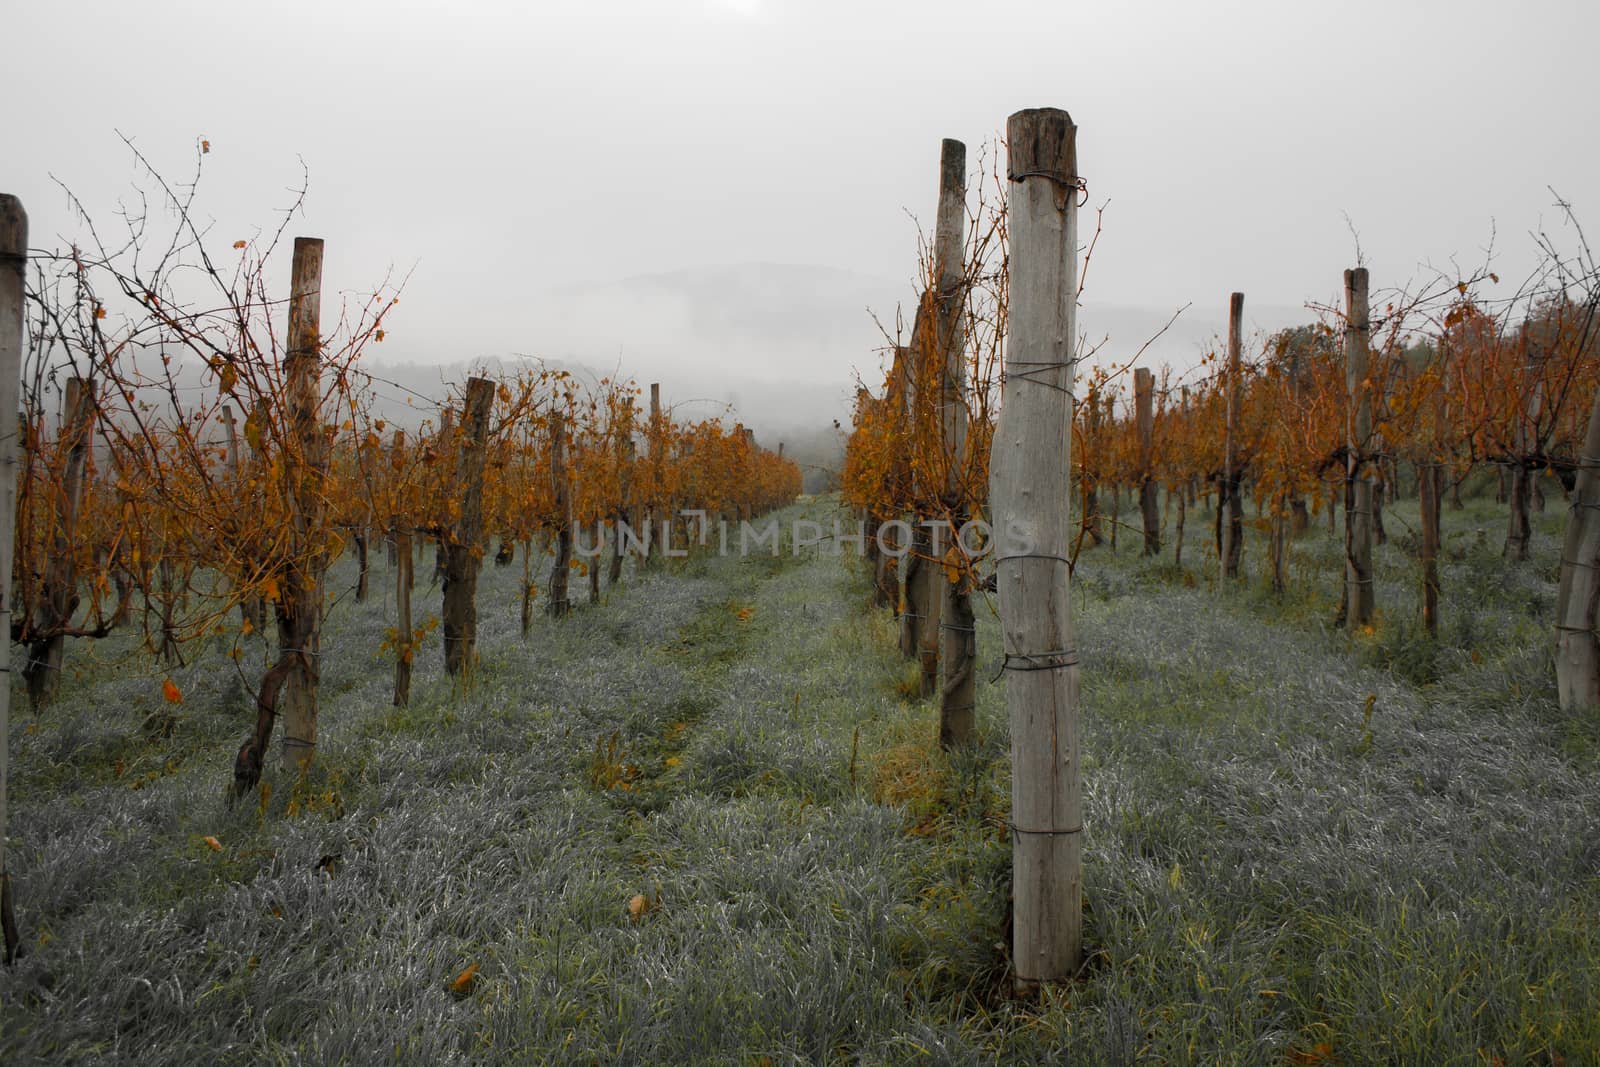 Autumn vineyard in Slovenia